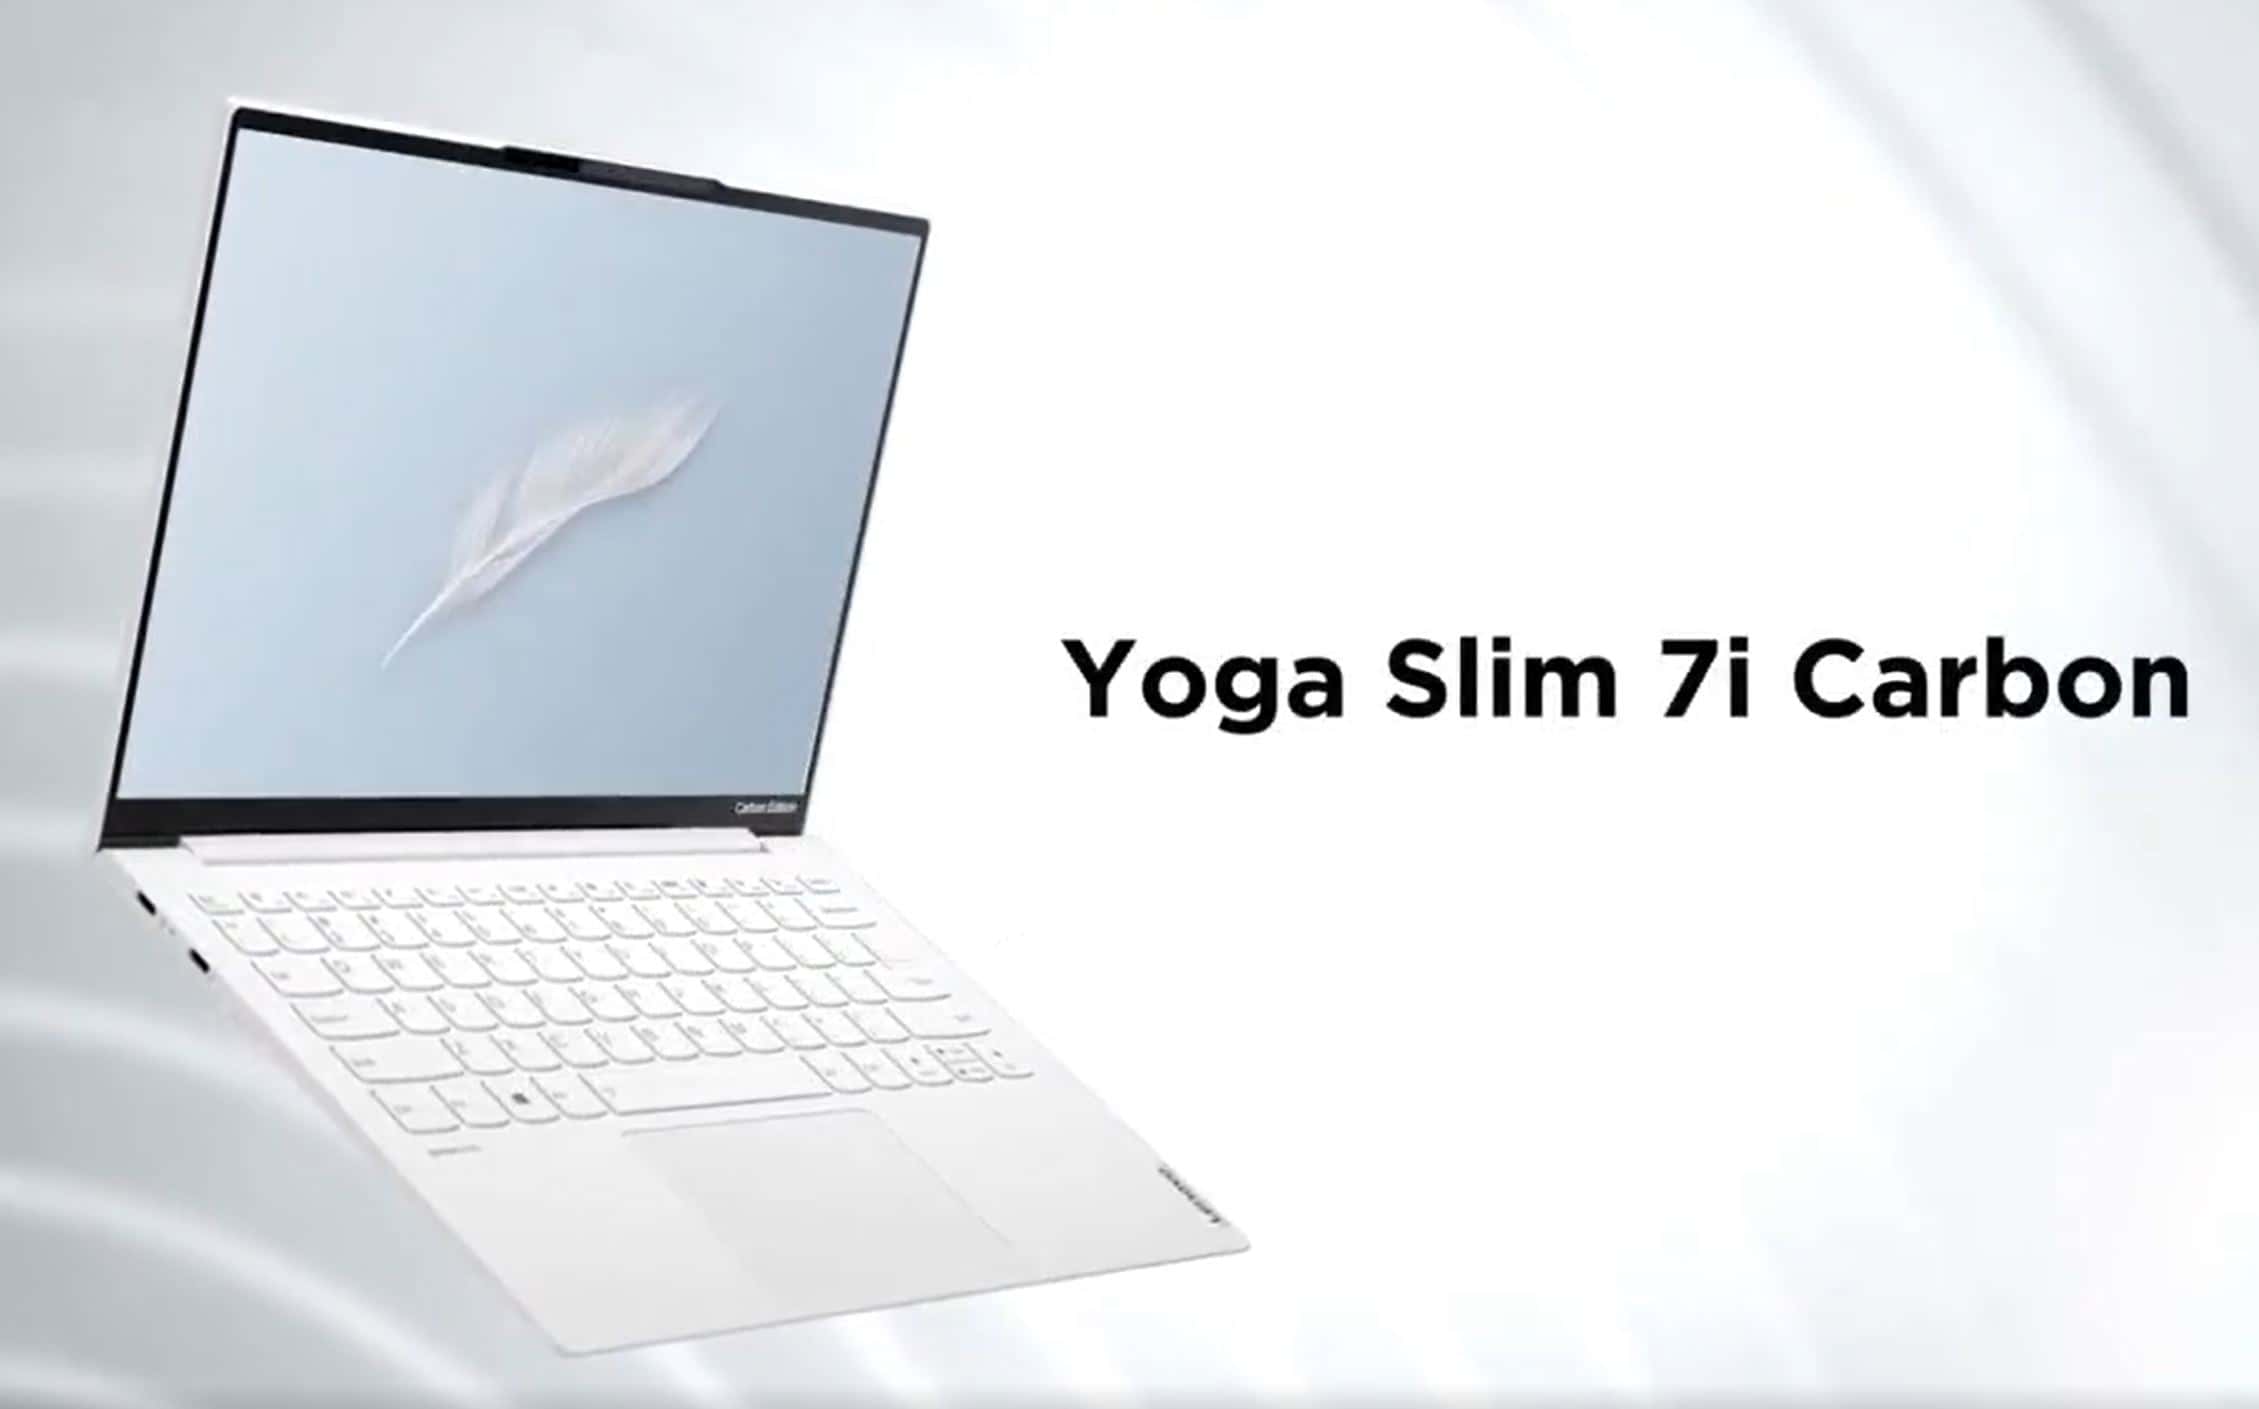 Upcoming Lenovo Slim 7i Carbon laptop leaked online - MSPoweruser